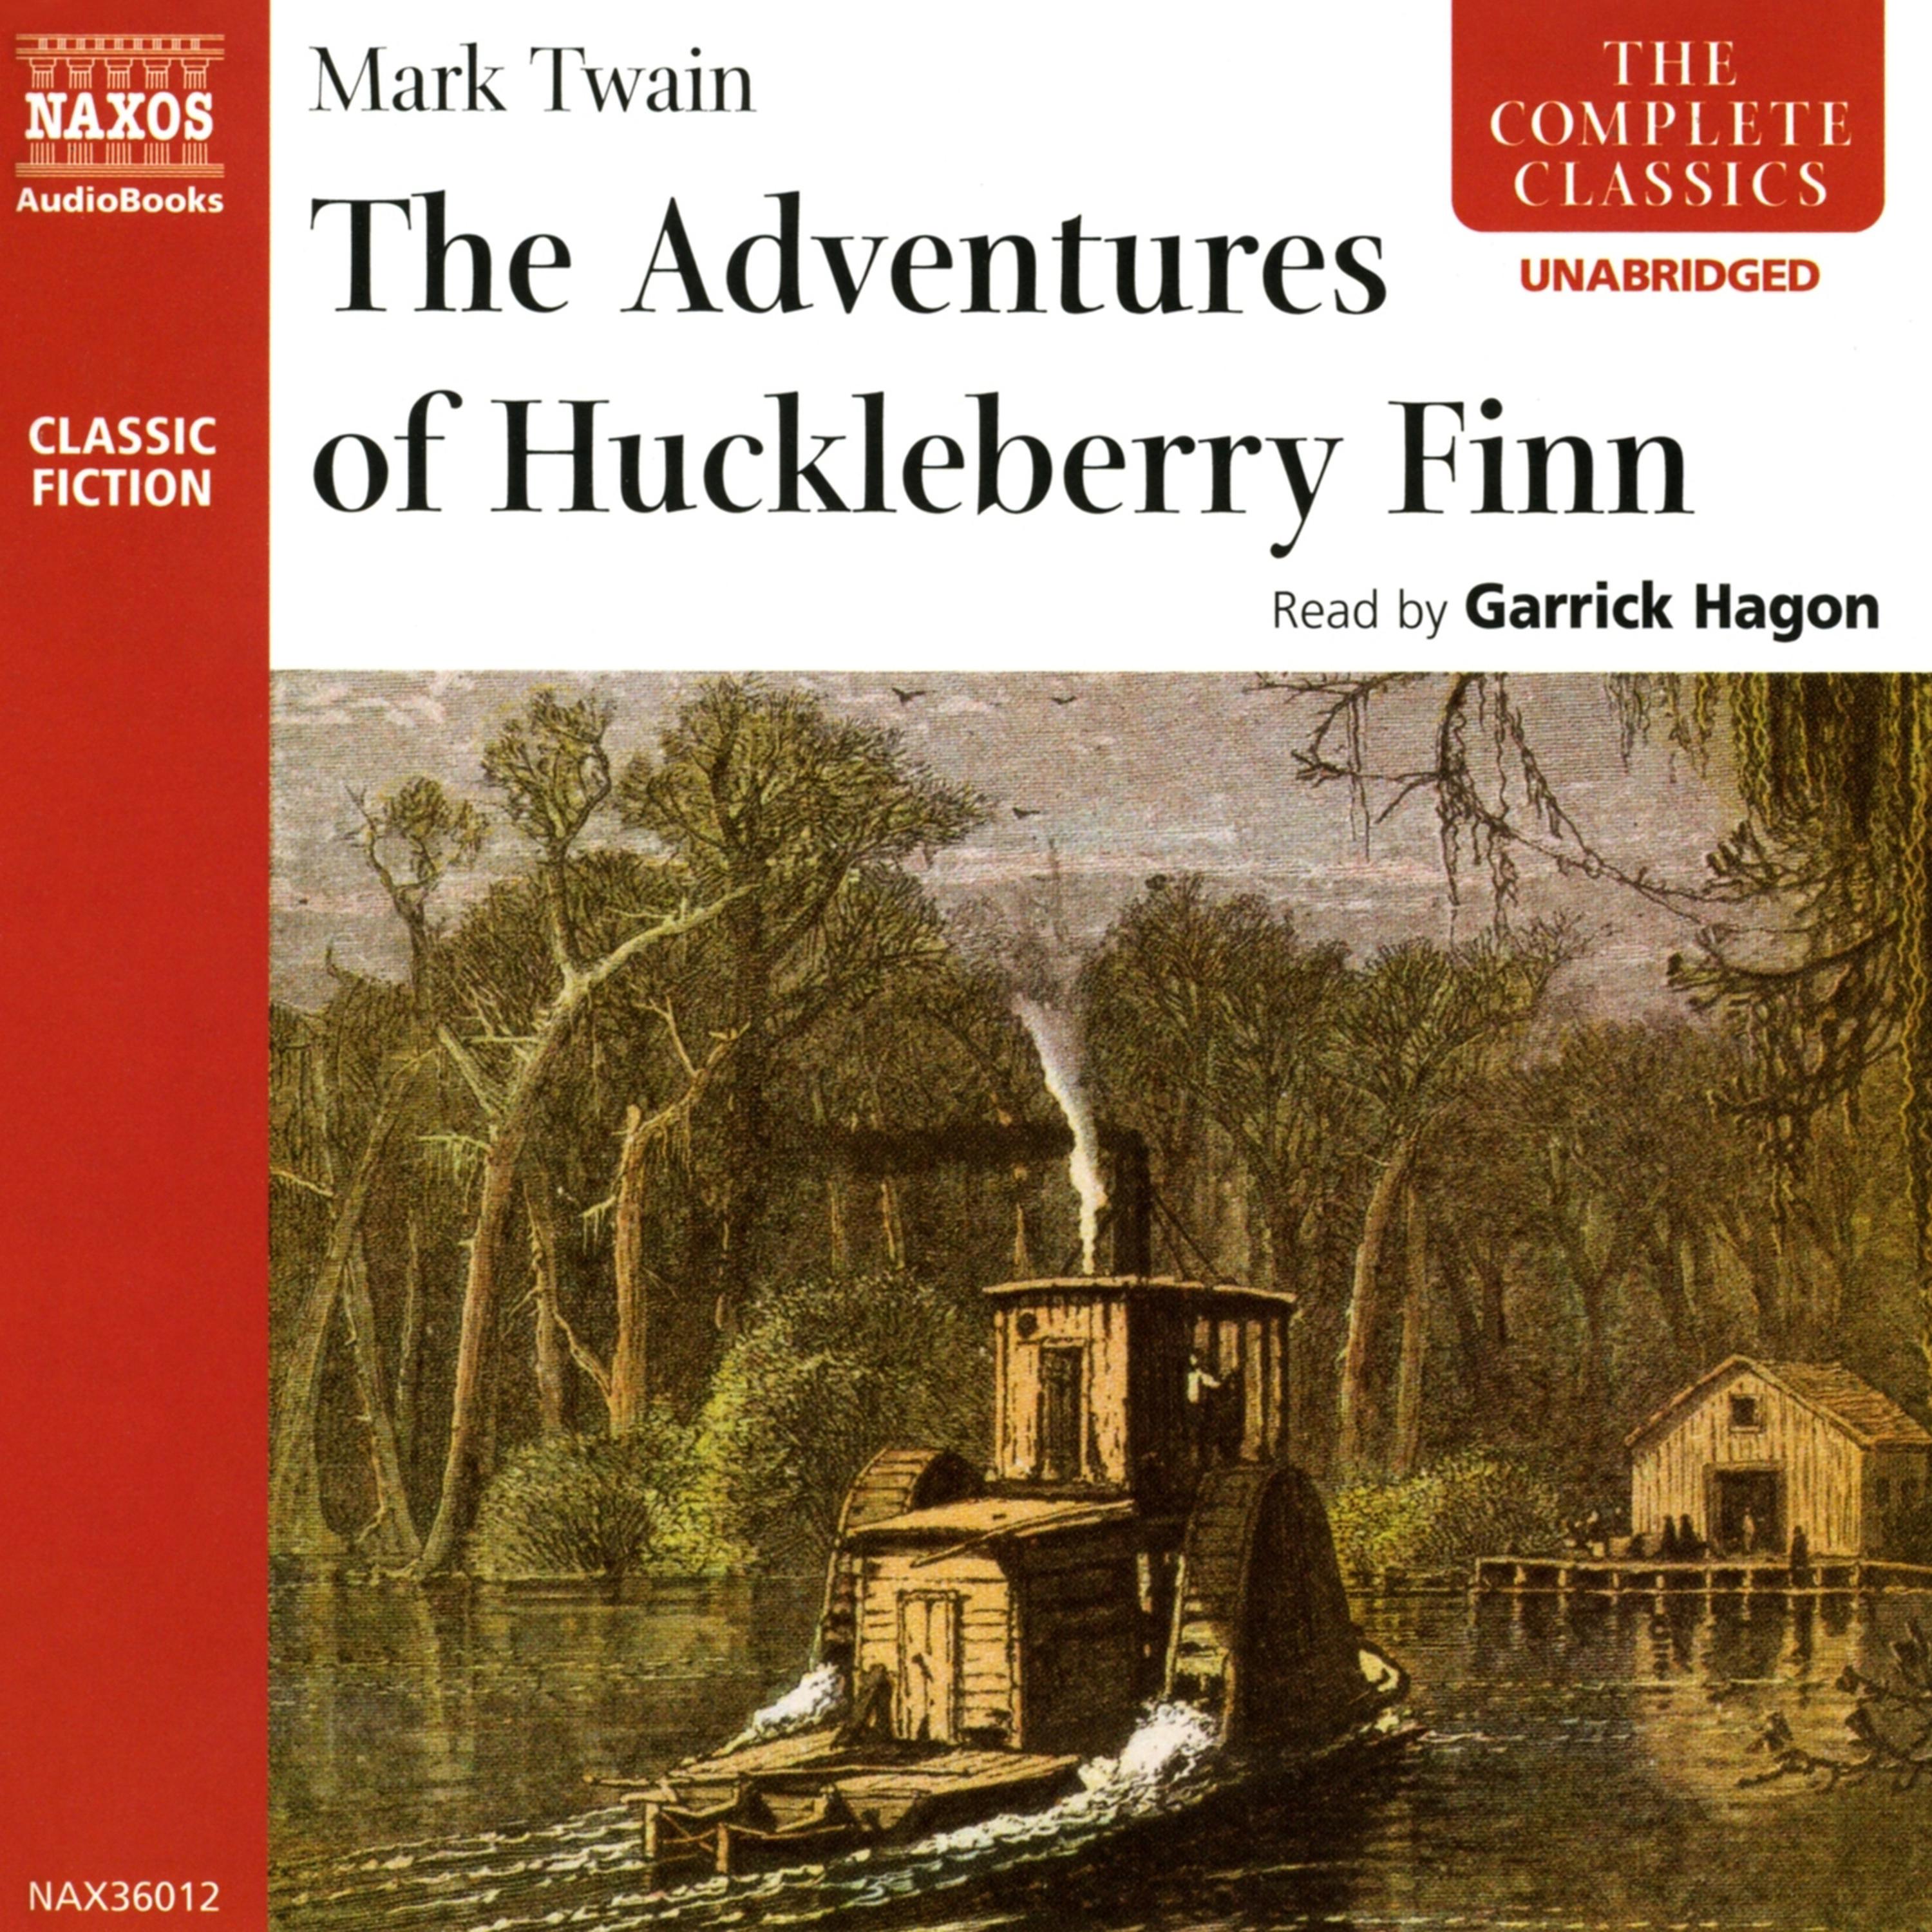 Mark Twain the Adventures of Huckleberry Finn. Adventures of Huckleberry Finn. The Adventures of Huckleberry Finn by Mark Twain. The adventures of huckleberry finn mark twain